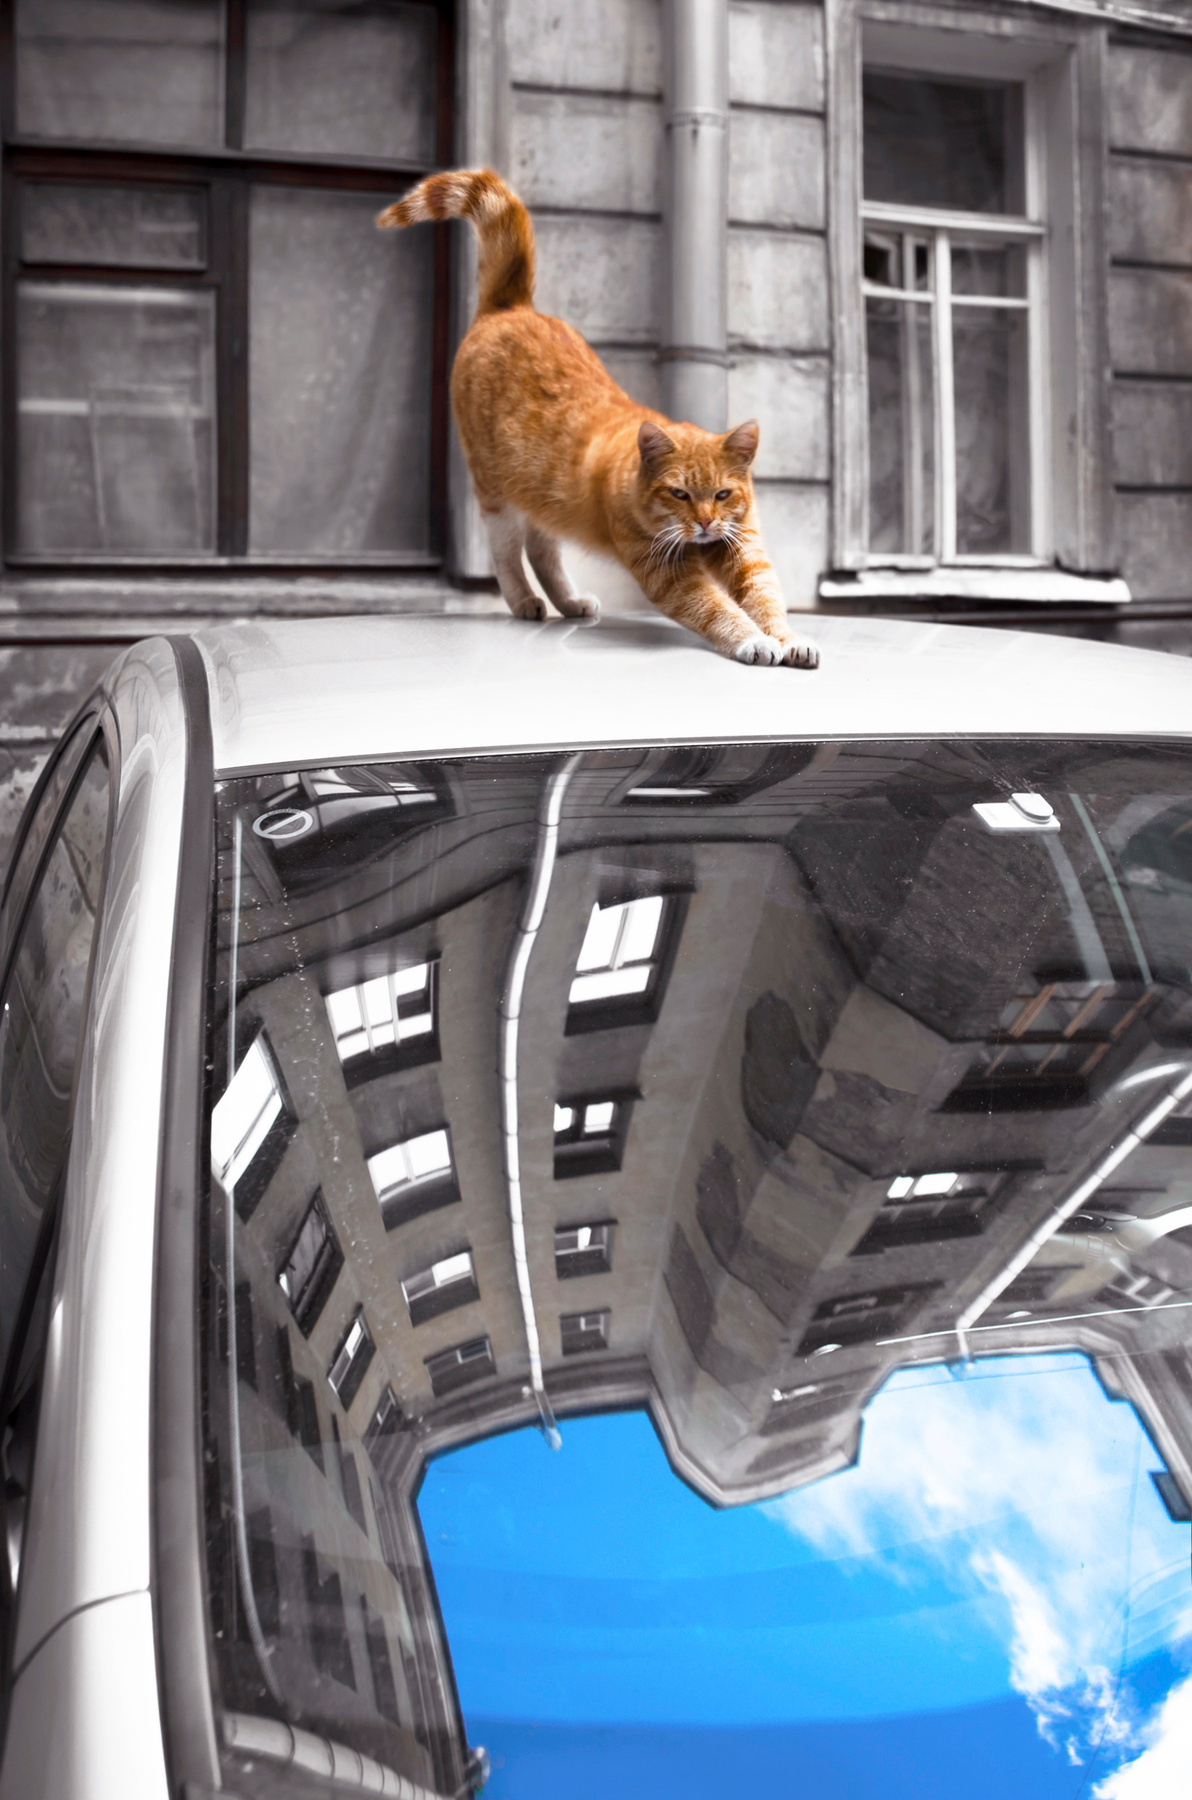 Хозяин двора Город Питер двор улица коты кошки отражение небо автомобиль стрит